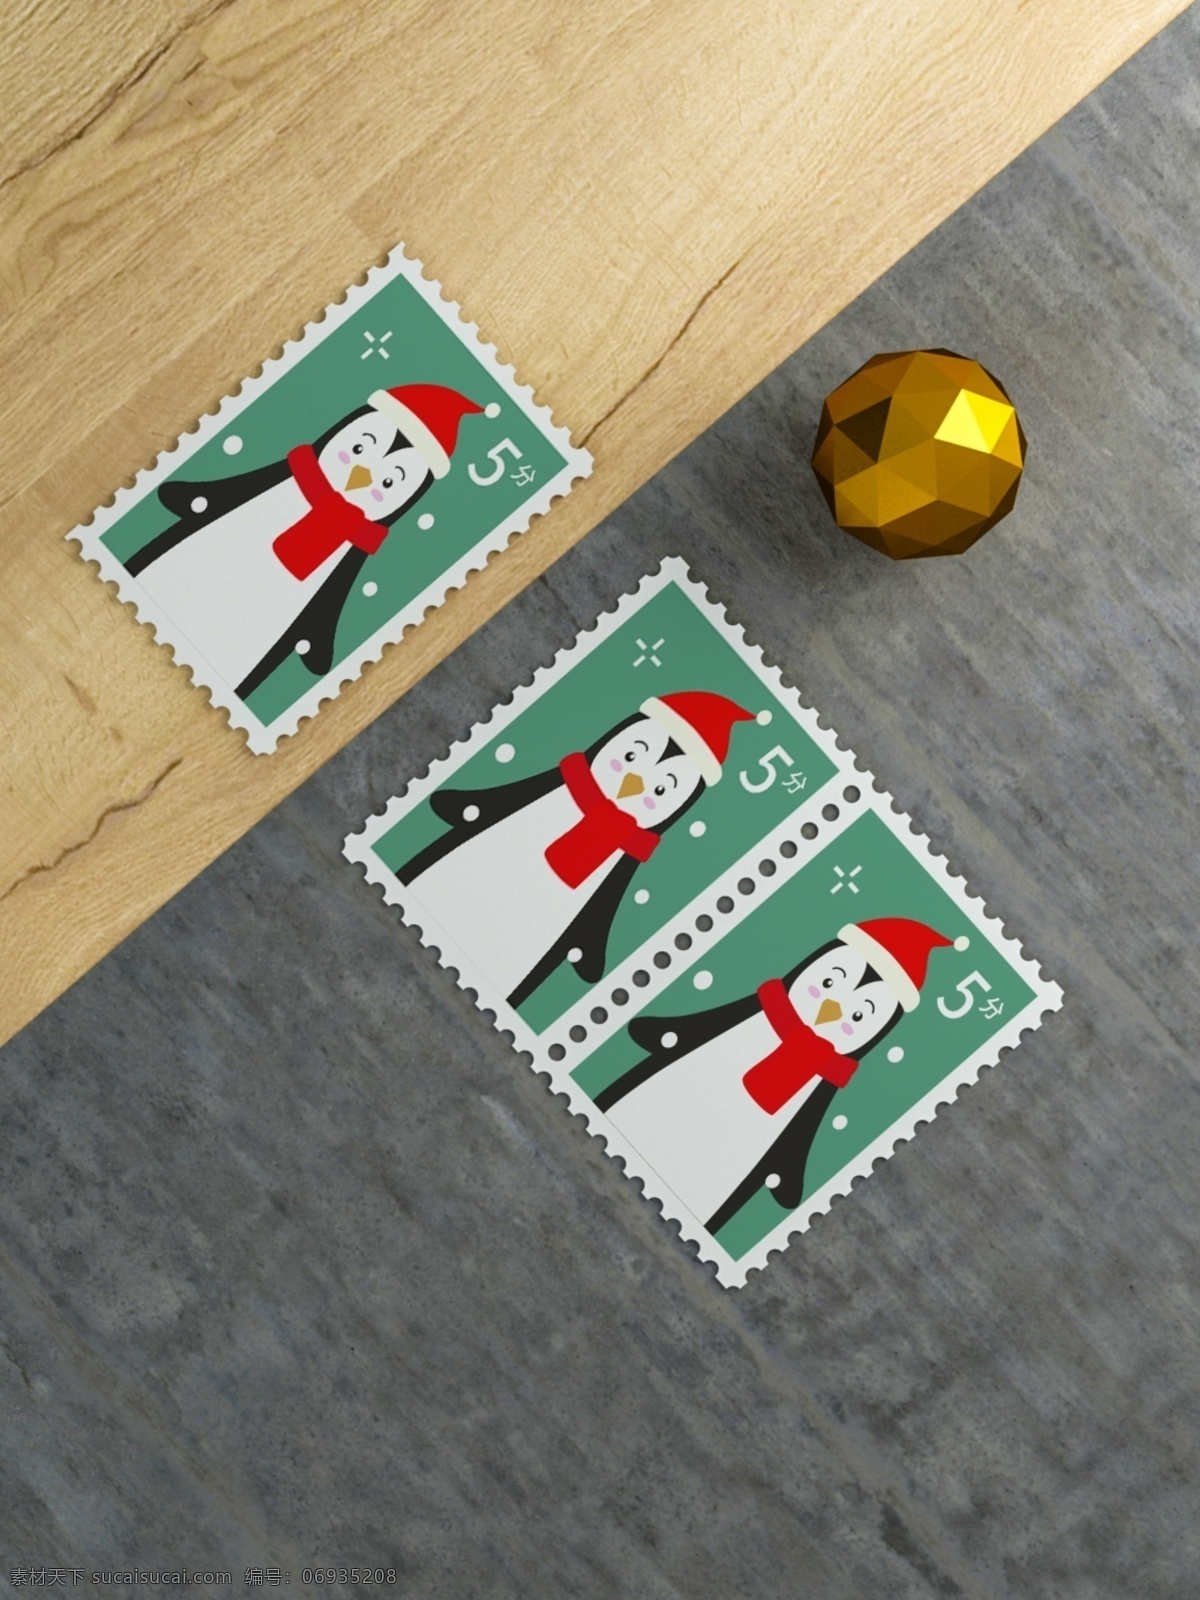 邮票样机图片 黑底 邮戳 样机 复古邮票 邮票 欧式邮票 邮票样机 欧式花纹边框 邮票设计 邮票效果 卡片设计 标签设计